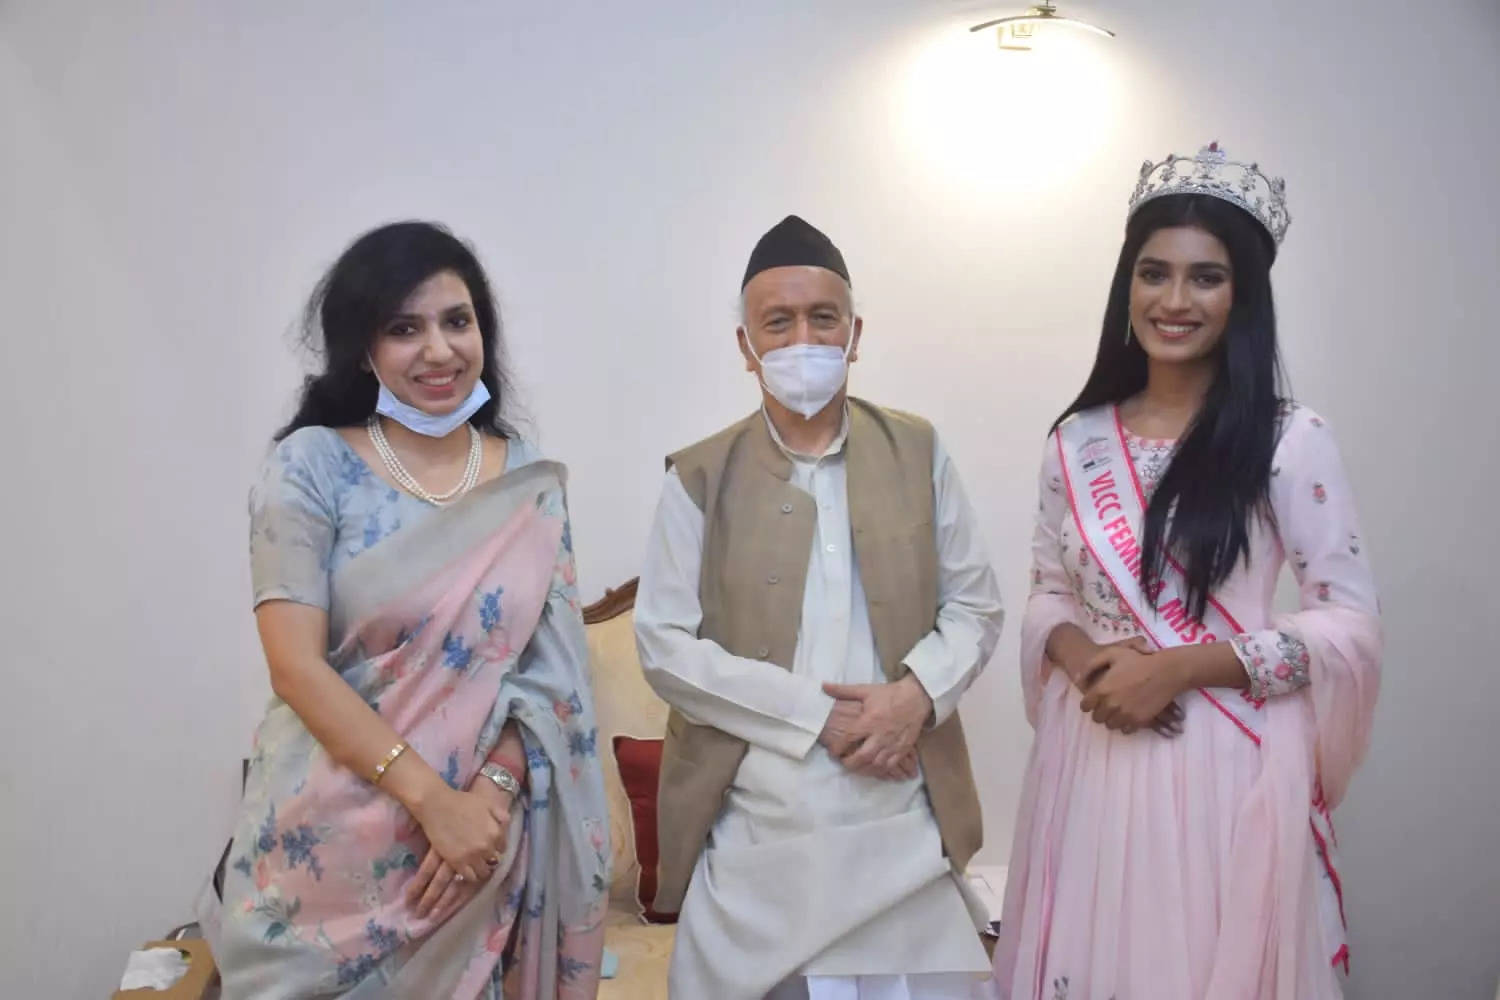 Femina Miss India 2020 runner-up Manya Singh meets Maharashtra governor